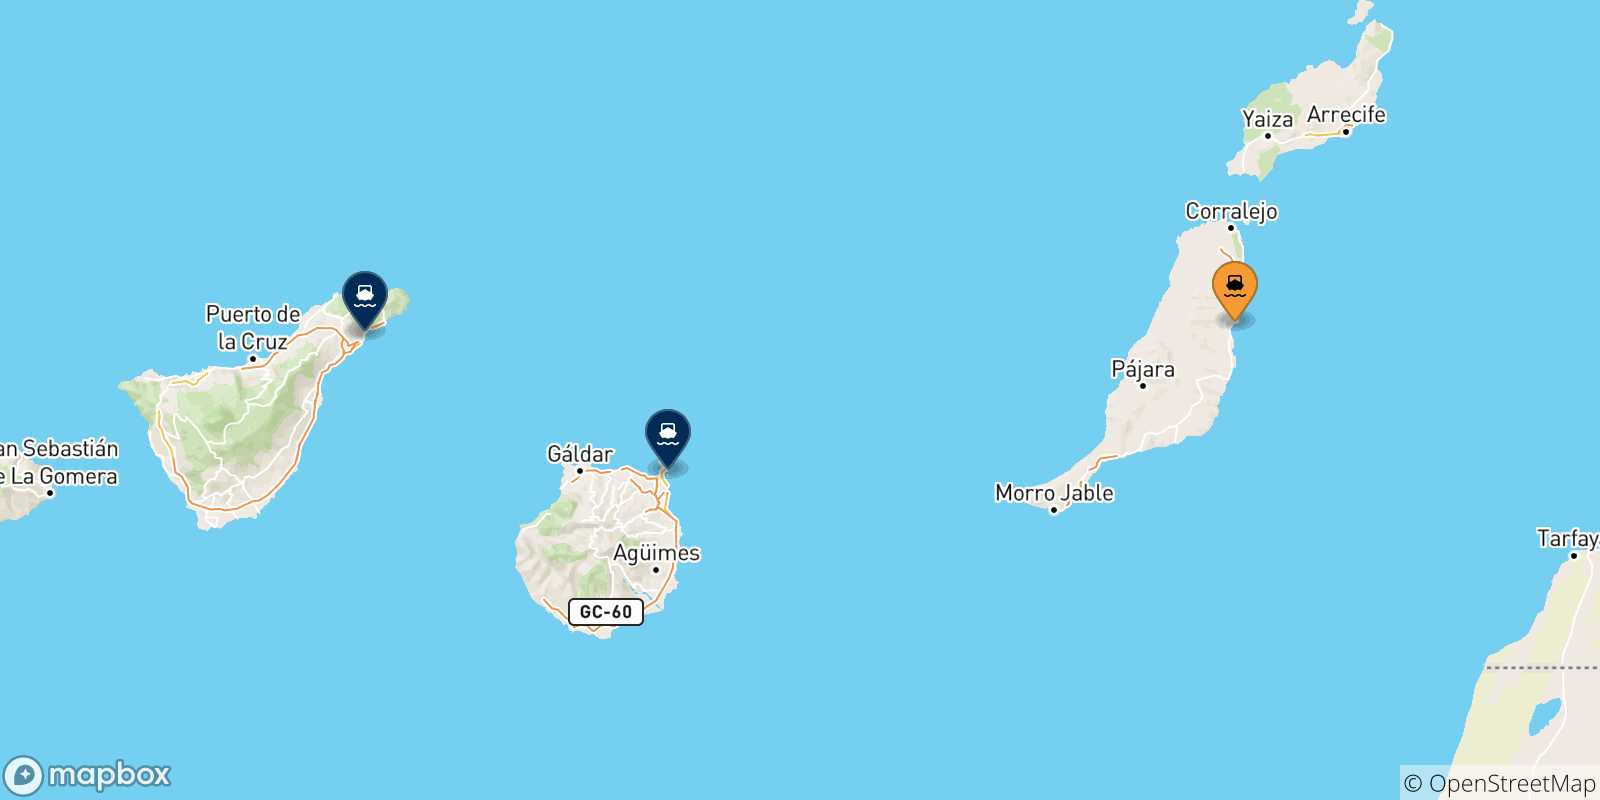 Mappa delle possibili rotte tra Puerto Del Rosario (Fuerteventura) e le Isole Canarie